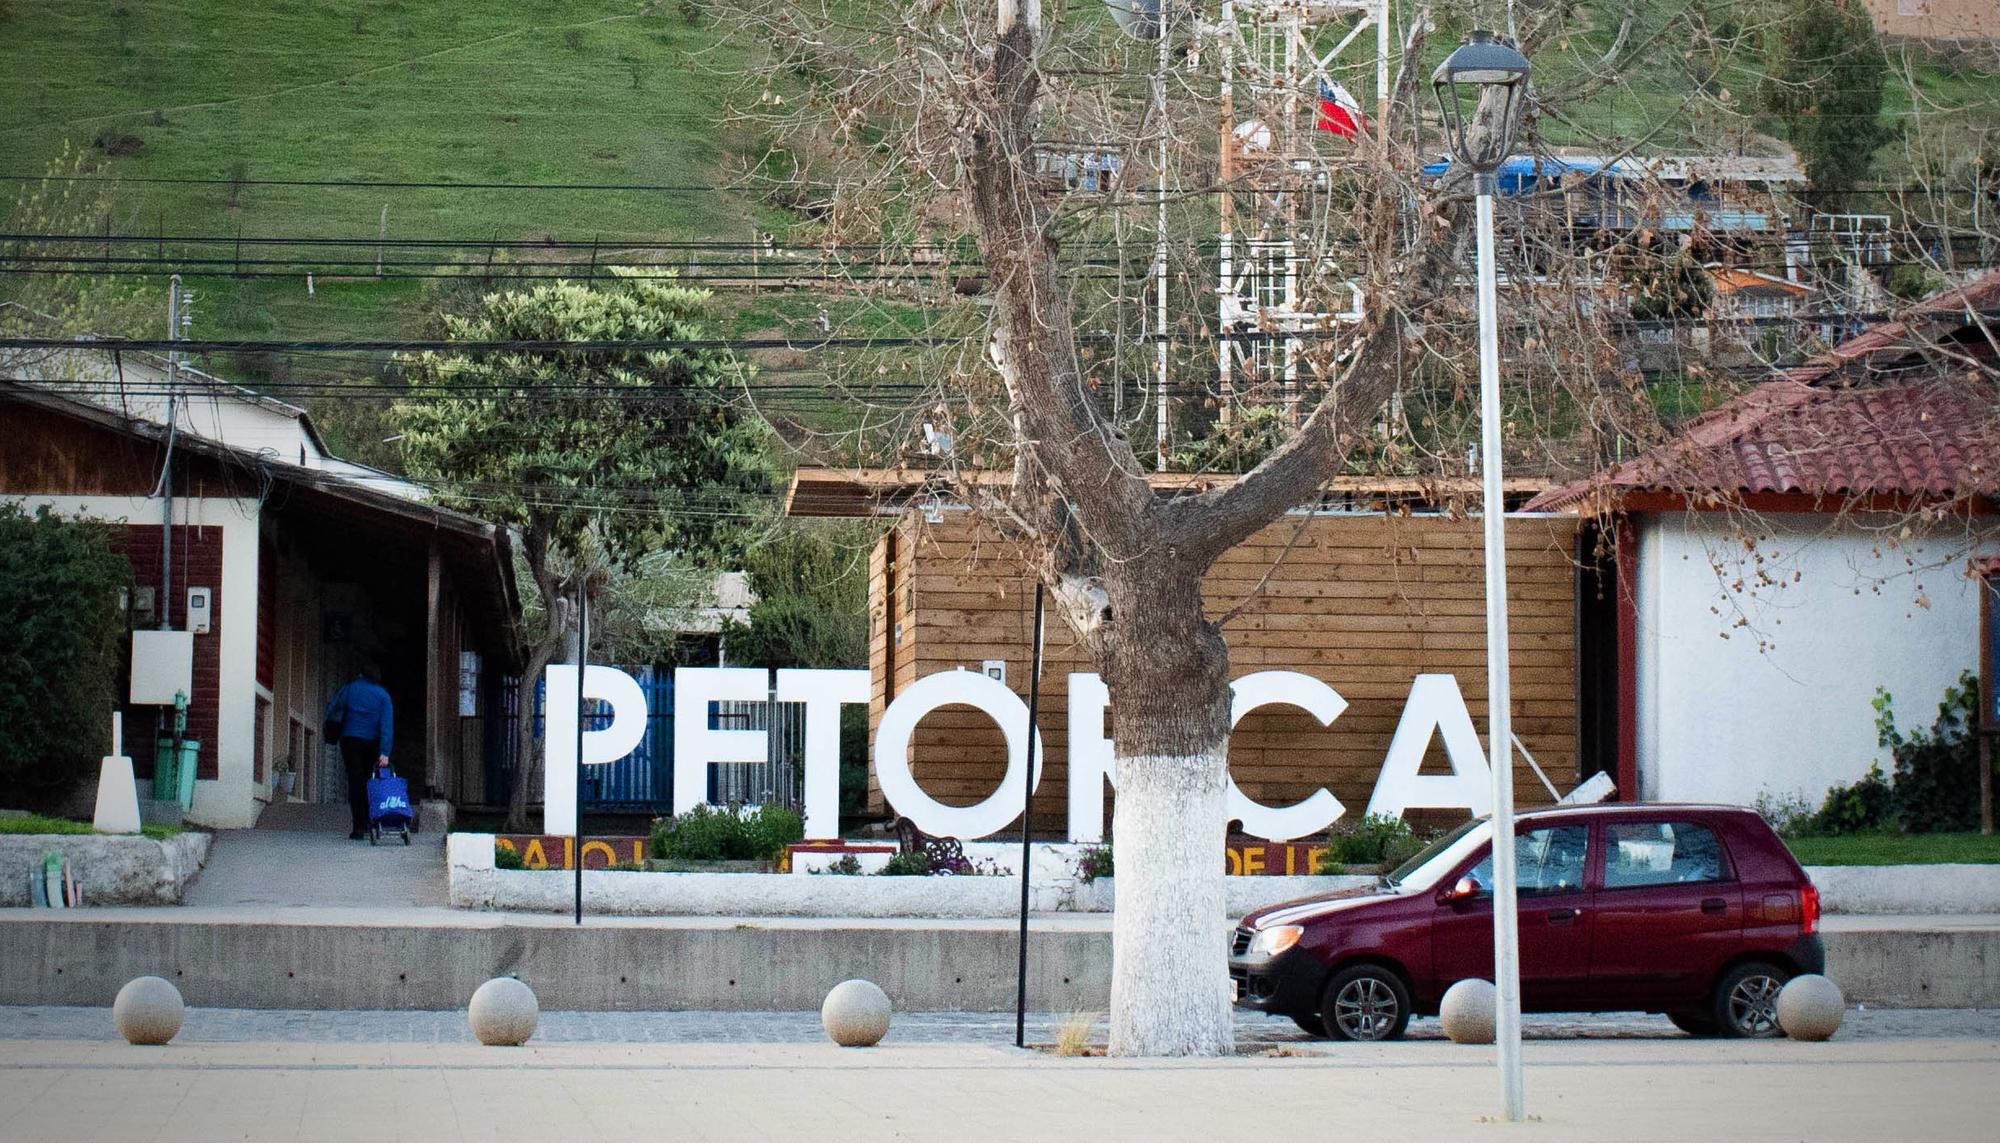 Calle de Petorca, comuna en la Región de Valparaíso, en la zona central de Chile, en la Provincia de Petorca.